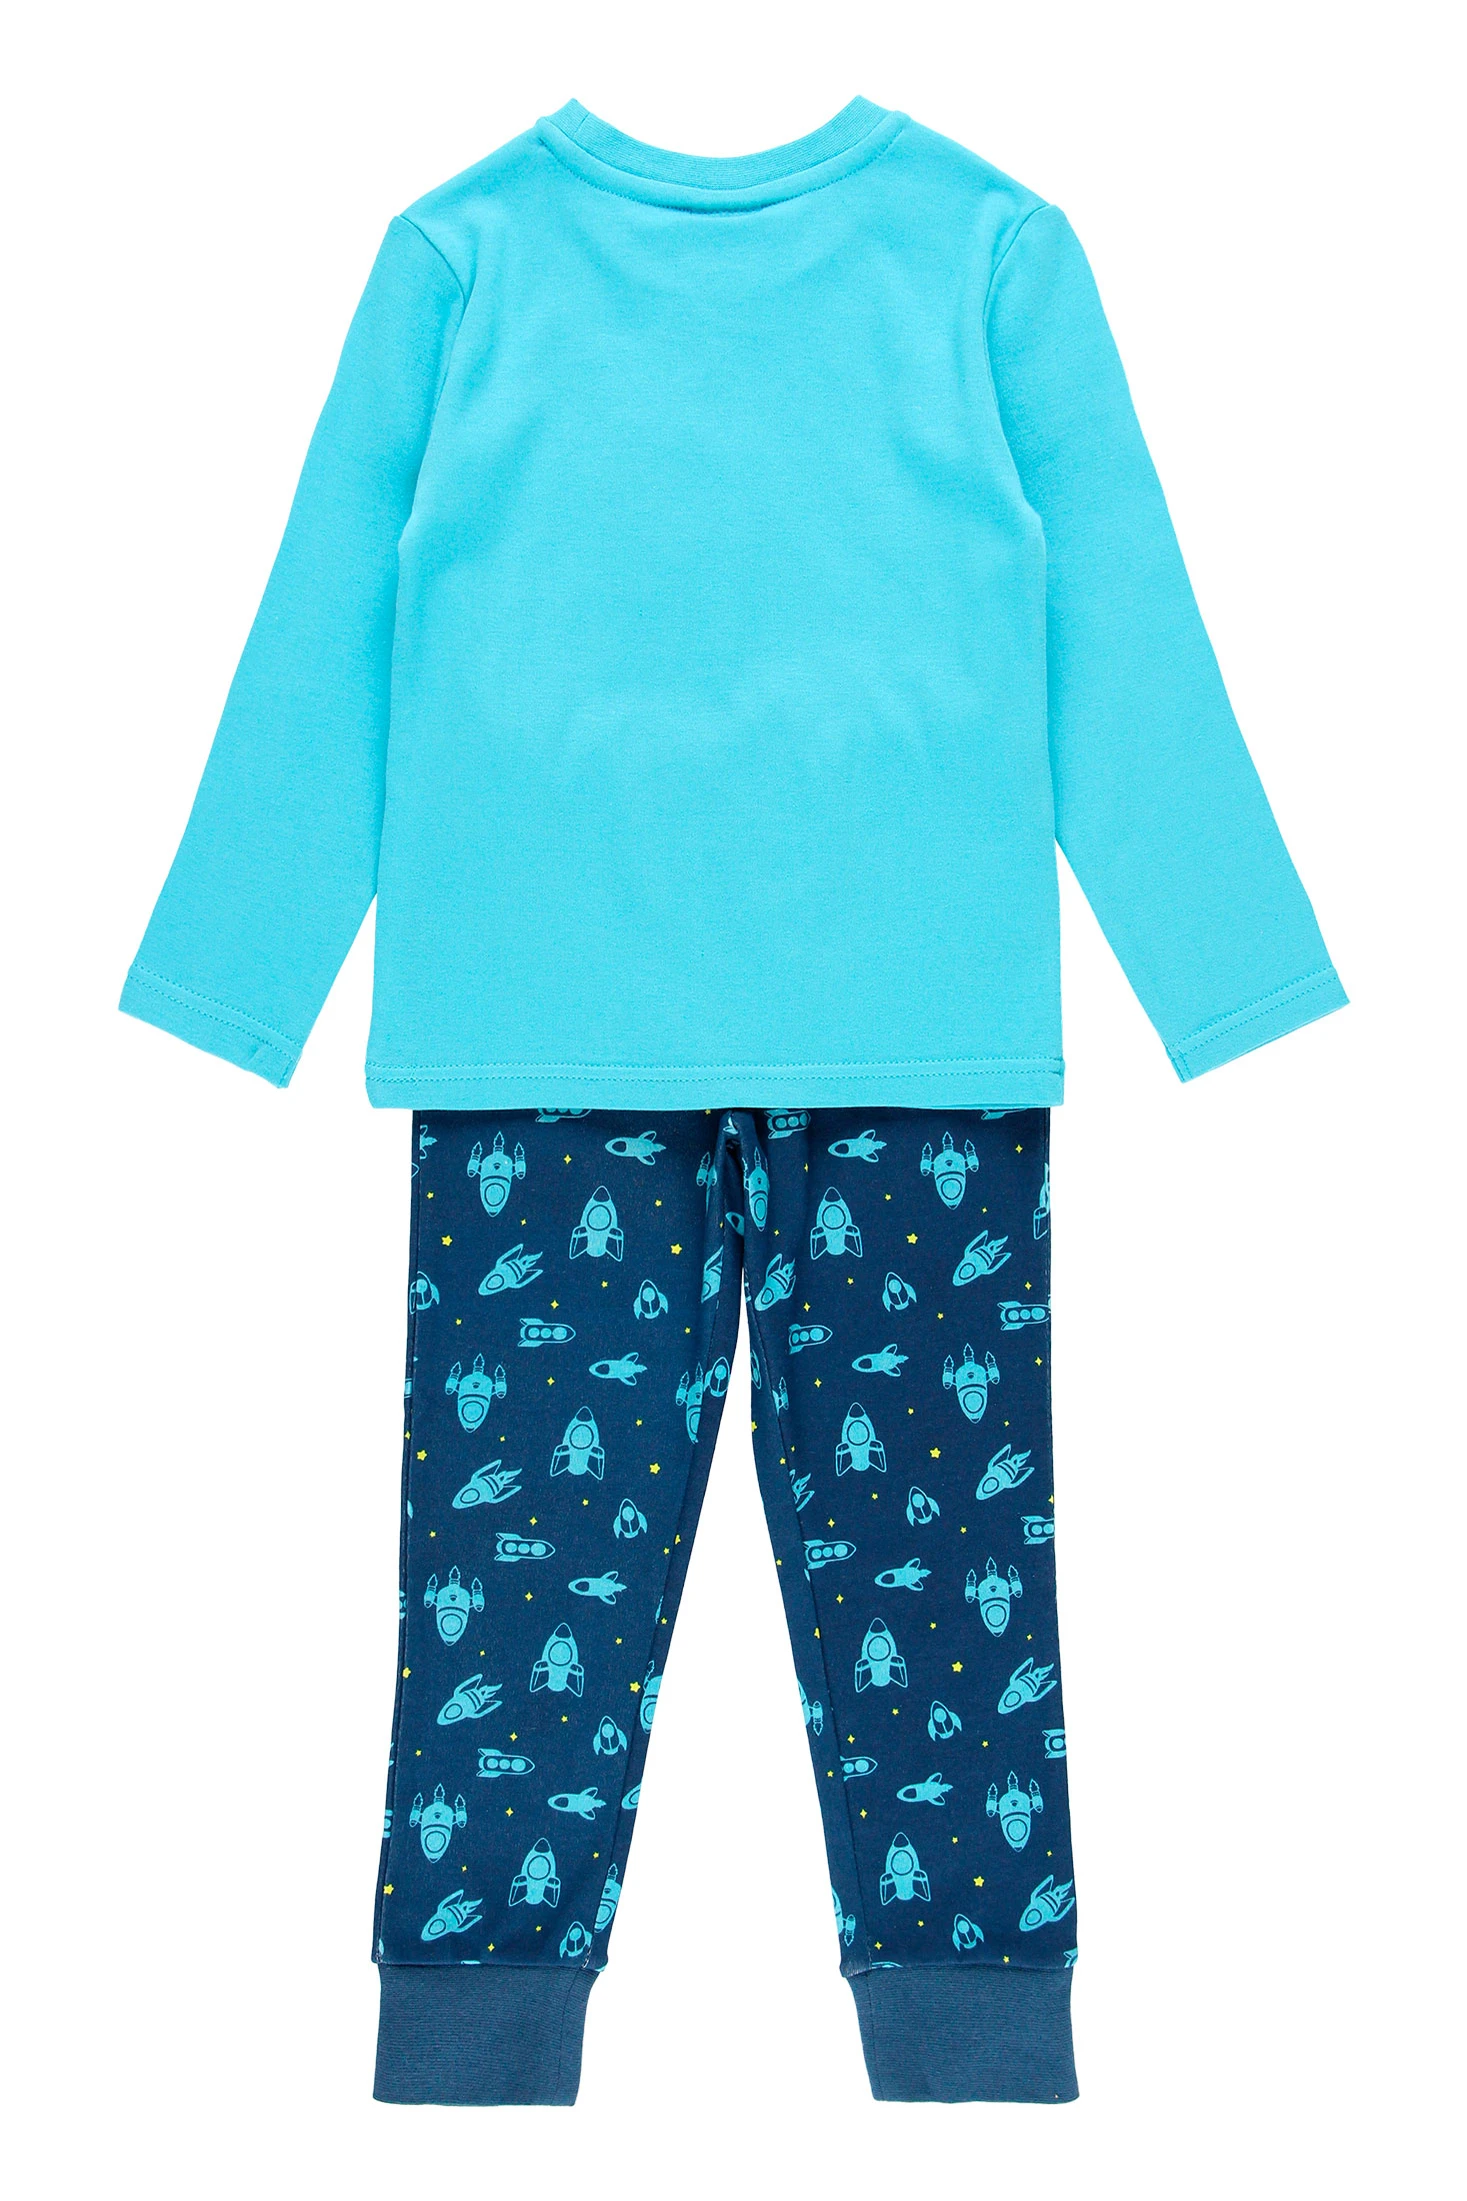 Pijama Niño Azul Lentejuela Reversible 3-12 Años 996ae0 –